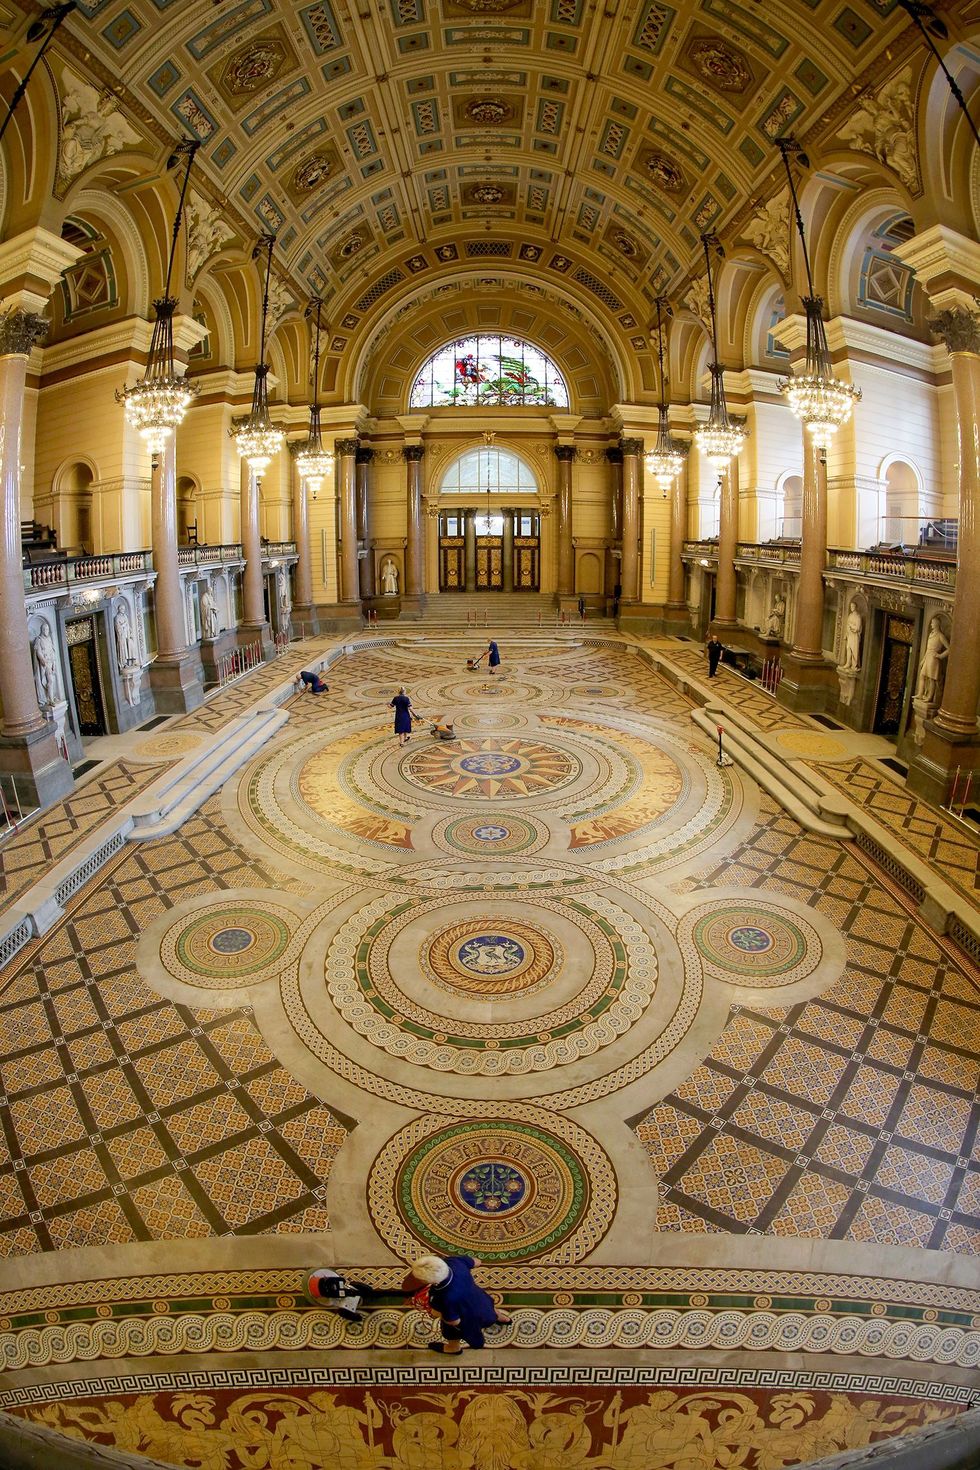 De vloer 1852 van St Georges Hall is belegd met dertigduizend handgemaakte mozaeken tegels die onder meer Liverpools mariene geschiedenis verbeelden